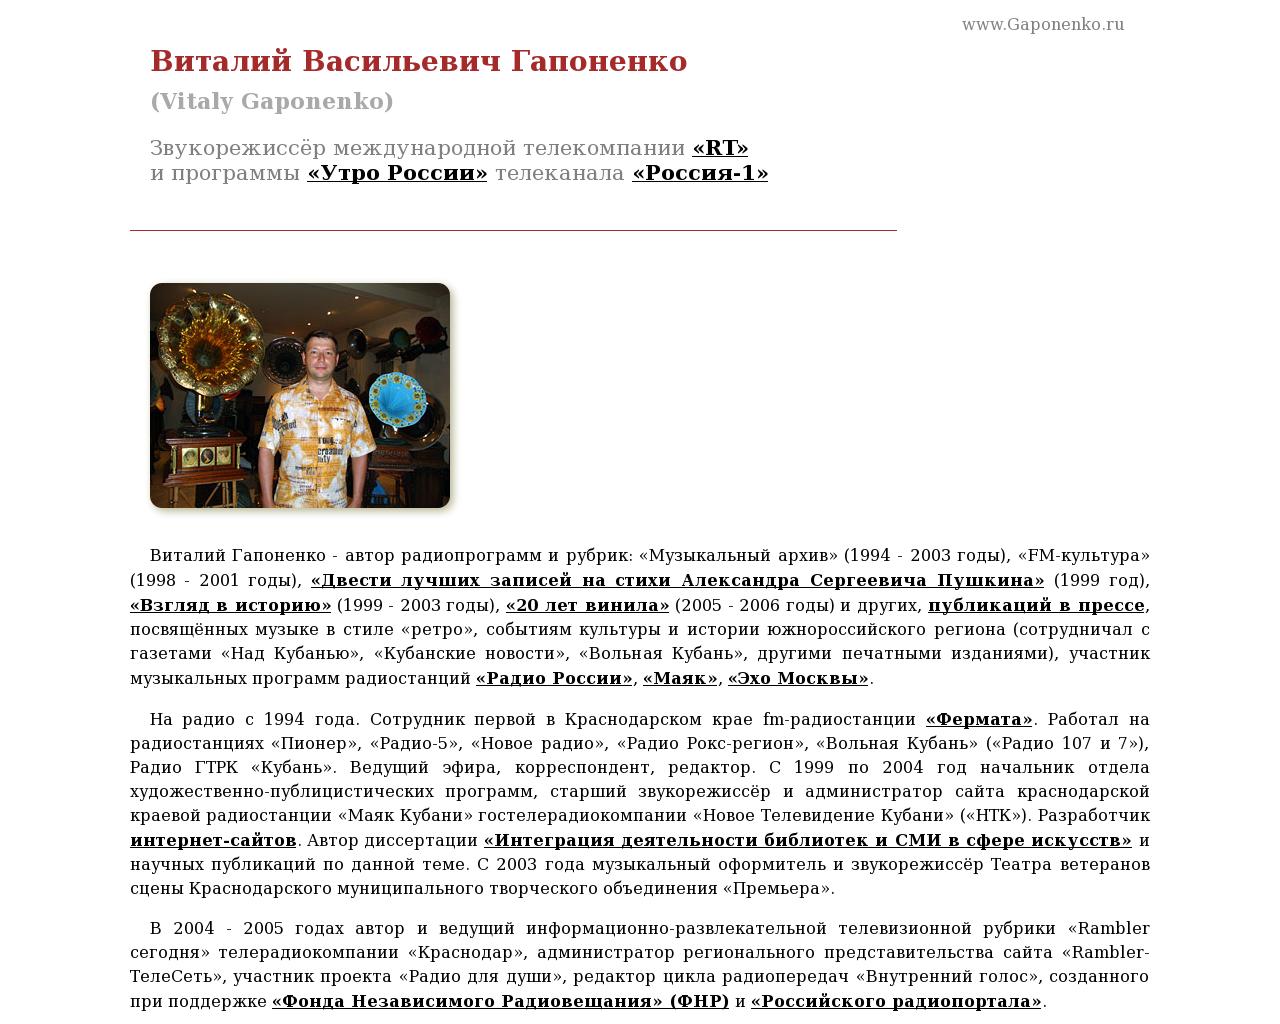 Изображение сайта gaponenko.ru в разрешении 1280x1024